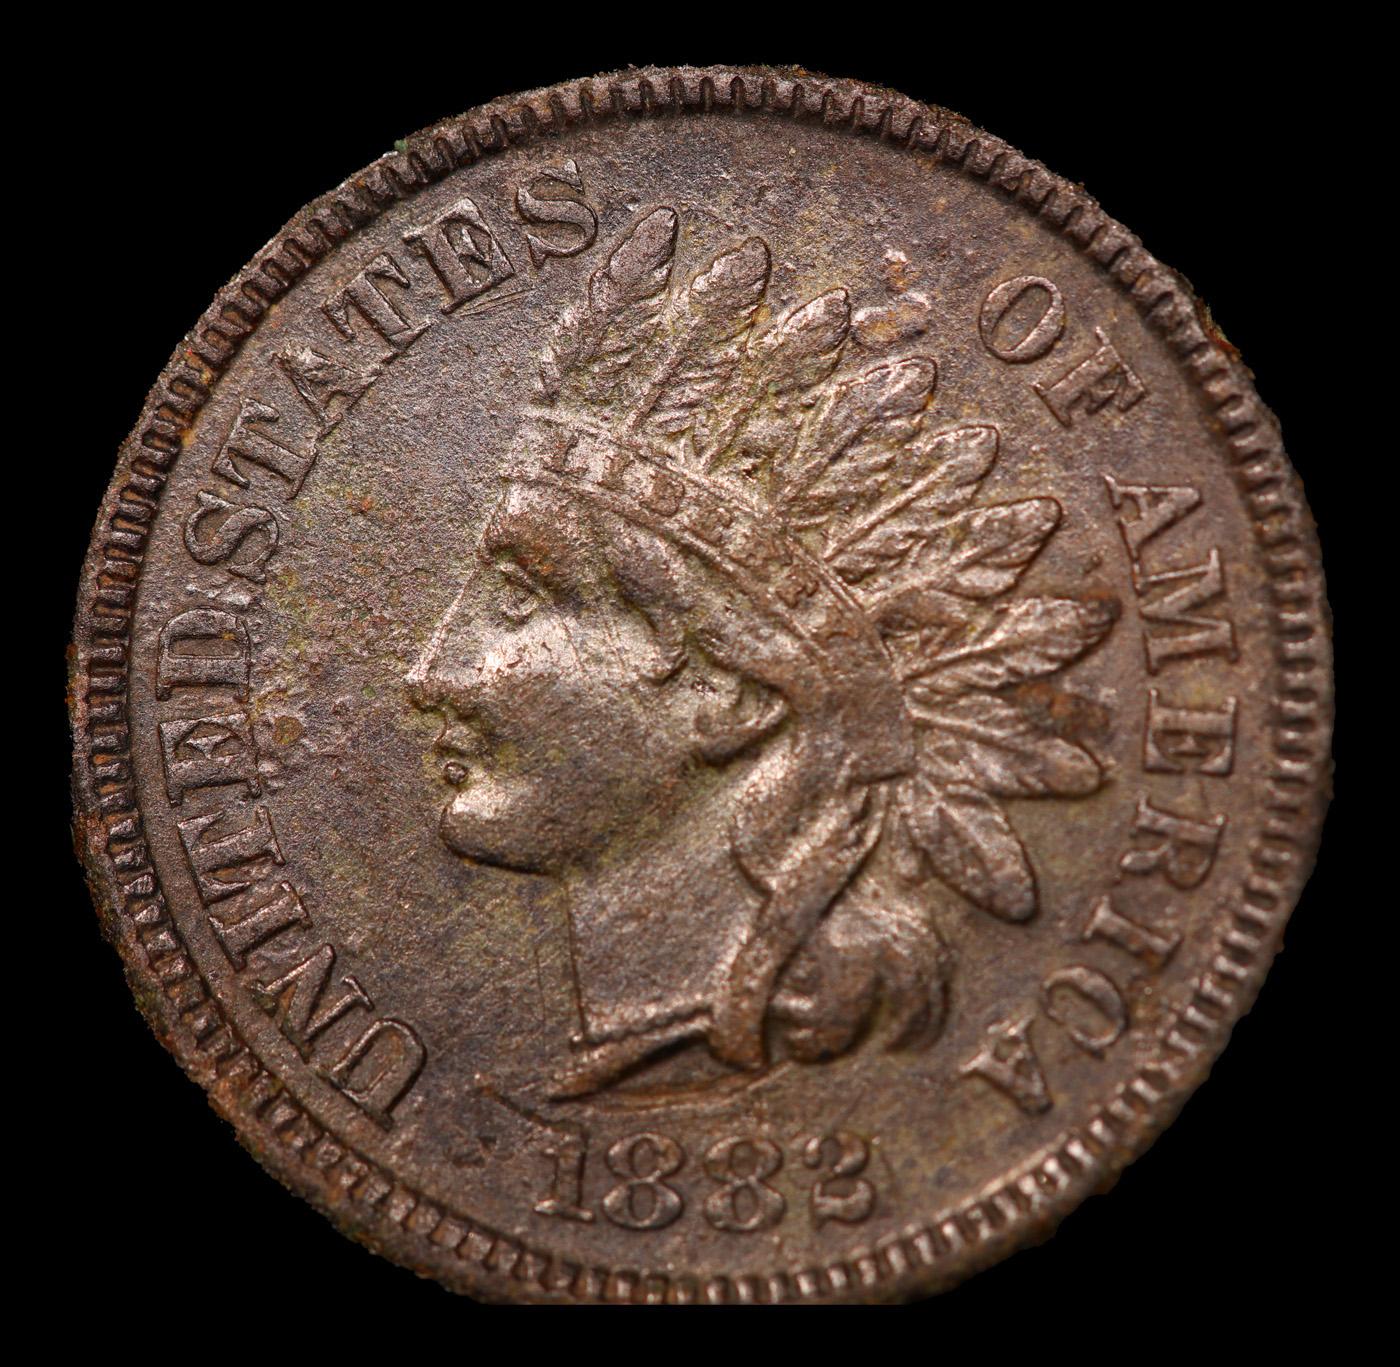 1882 Indian Cent 1c Grades Unc Details